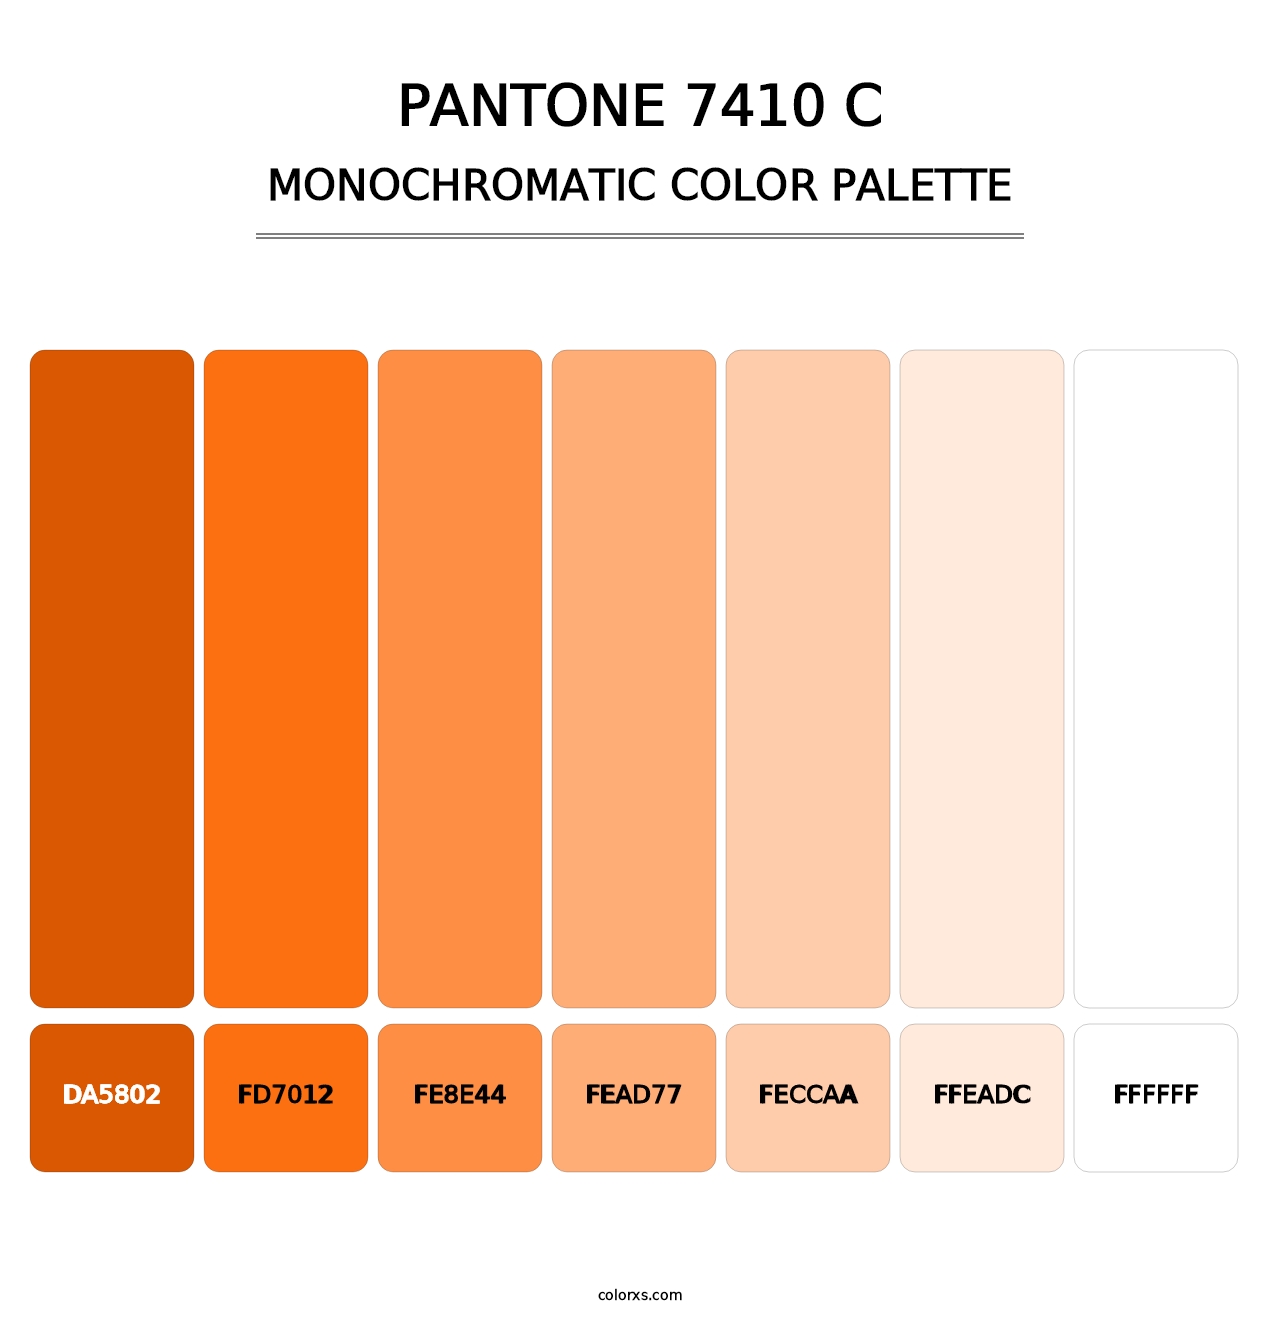 PANTONE 7410 C - Monochromatic Color Palette